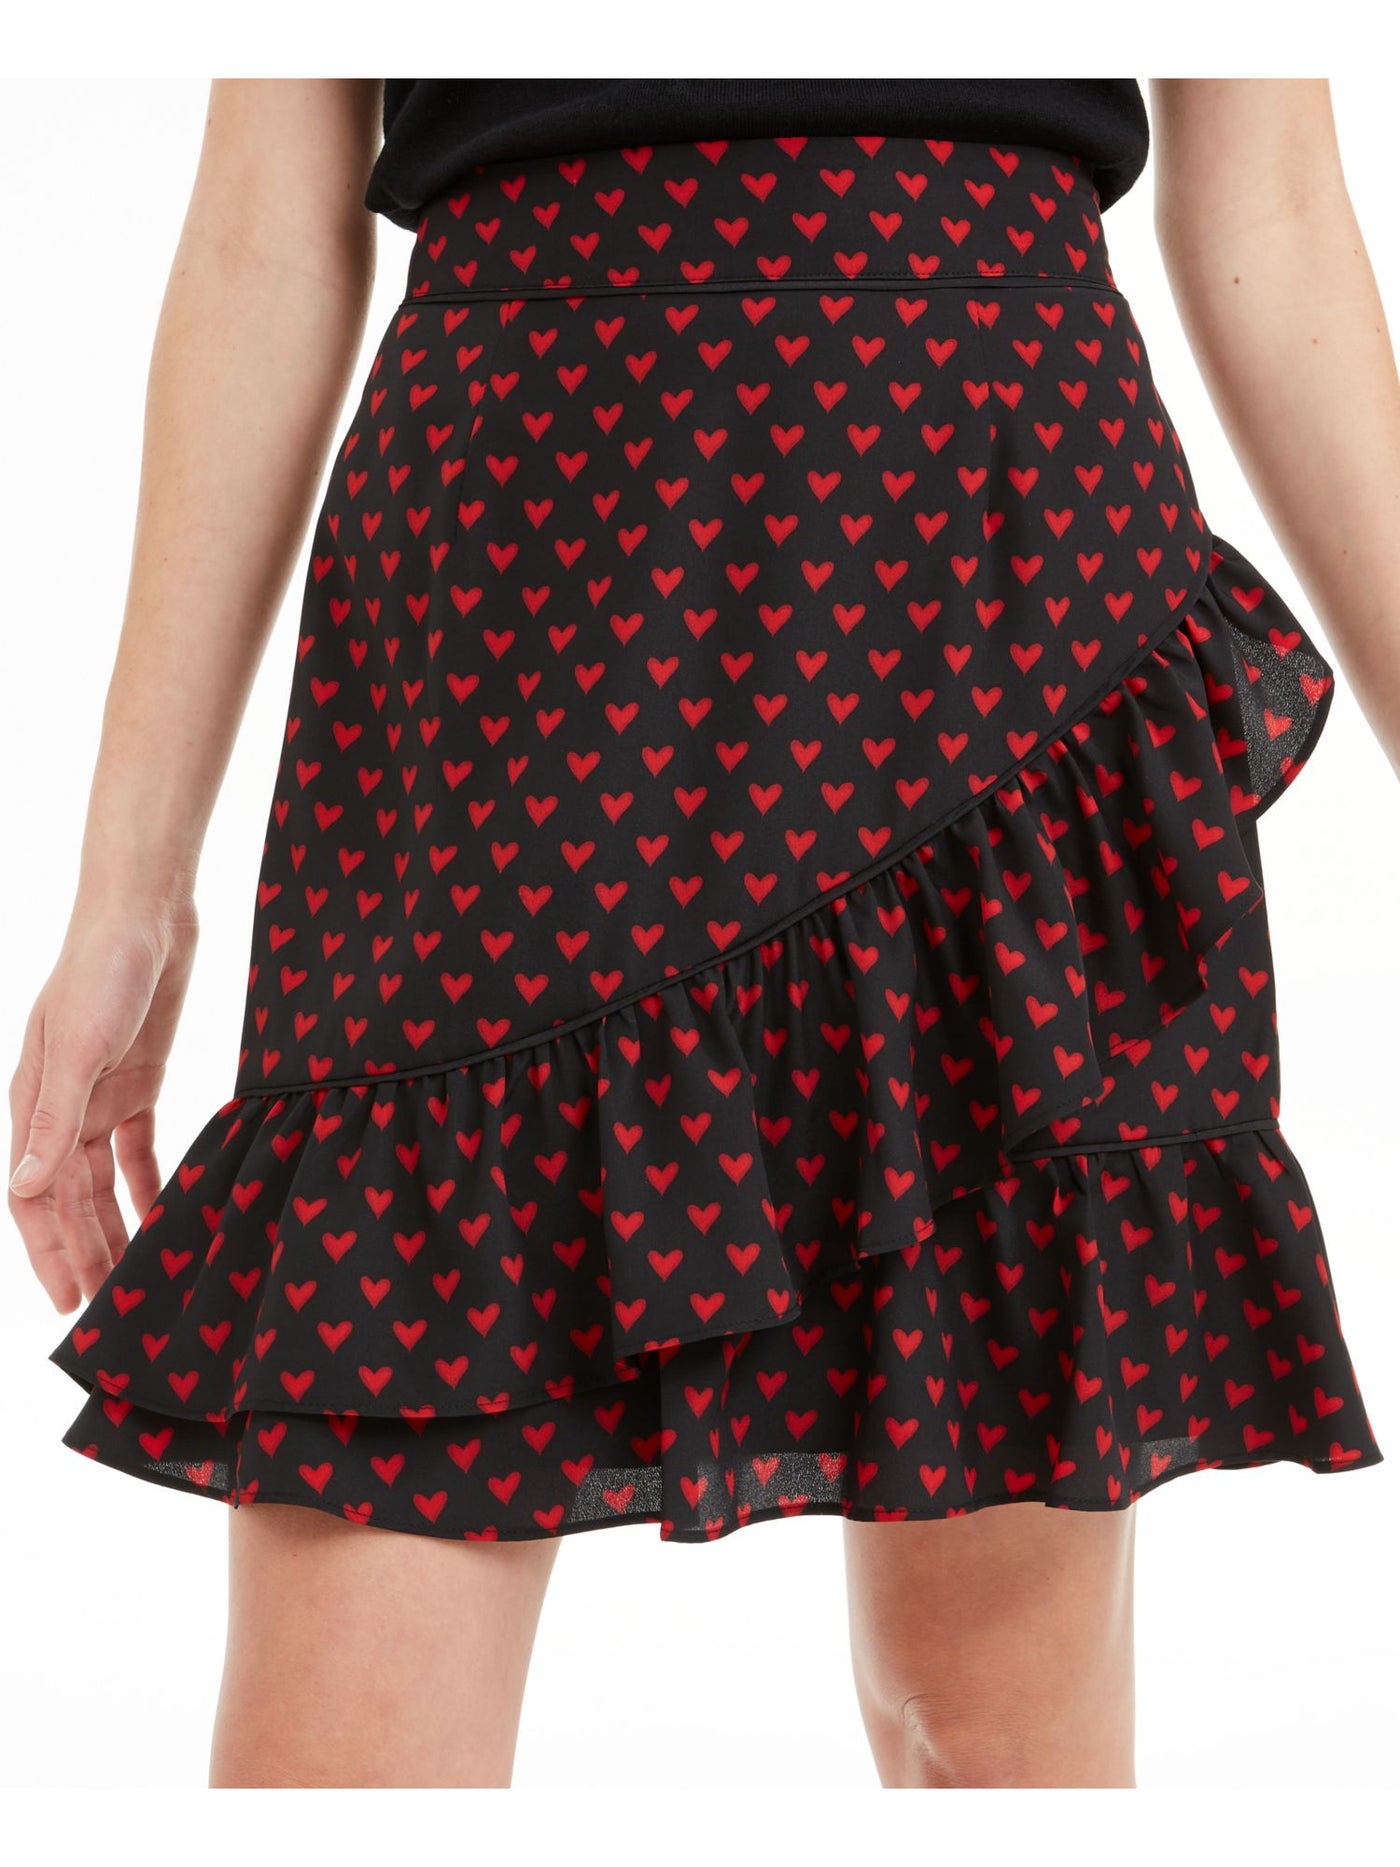 MAISON JULES Womens Black Heart Print Knee Length Ruffled Skirt XS